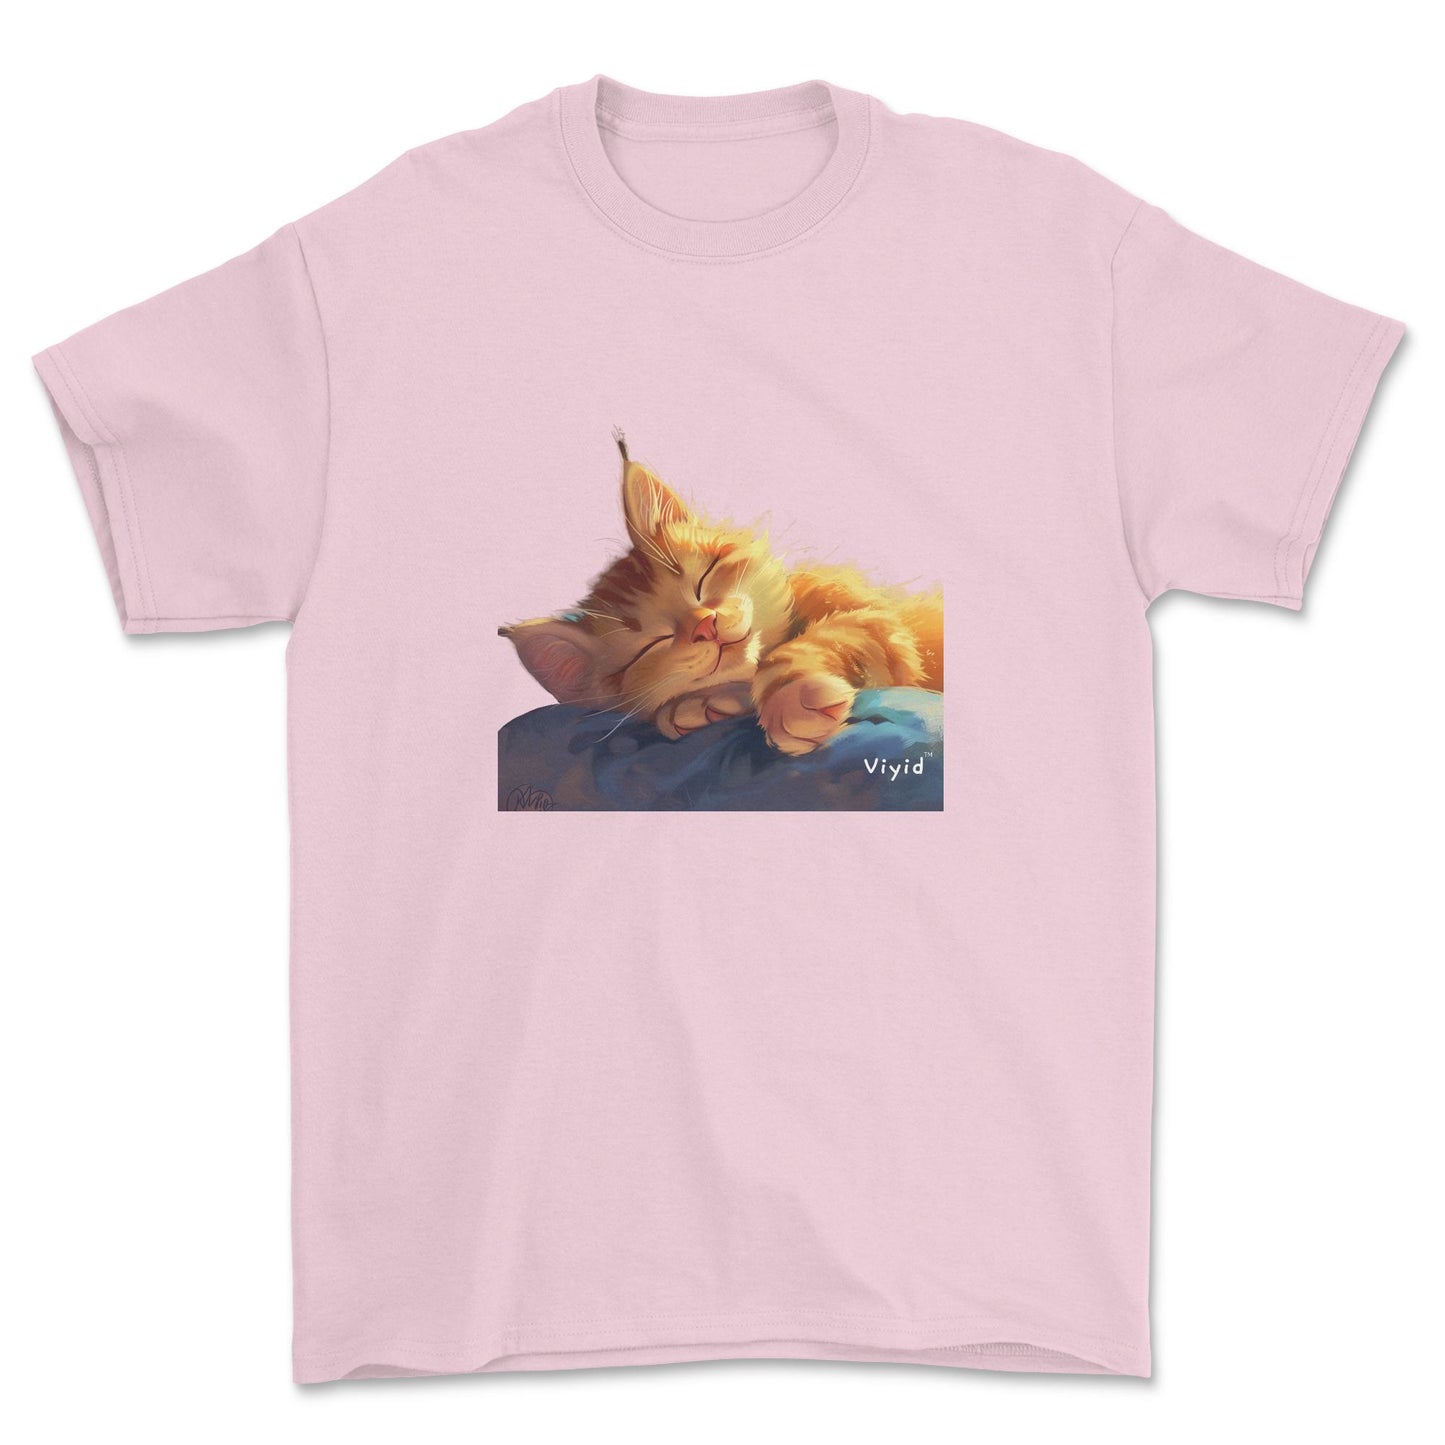 sleeping ginger cat adult t-shirt light pink